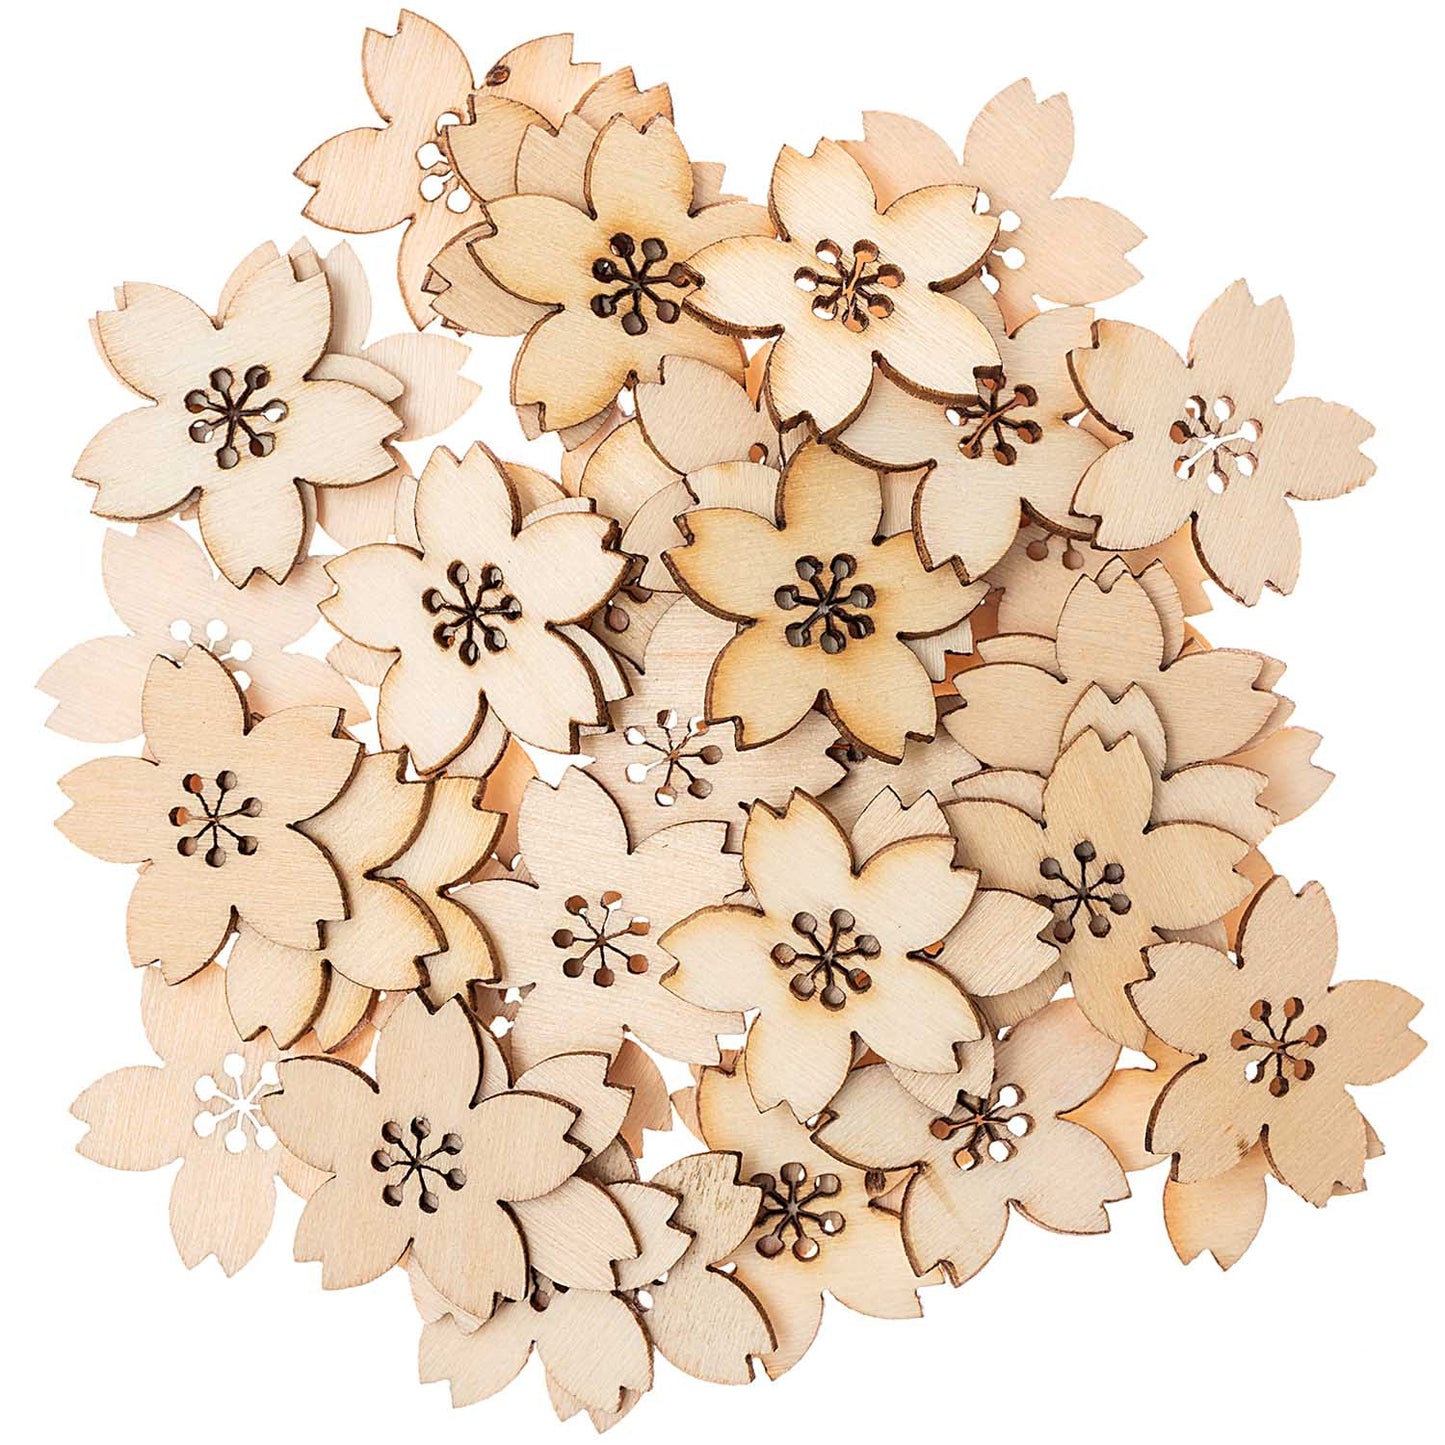 Natural Cherry Blossom Confetti | Eco Confetti | Pretty Little Party Rico Design